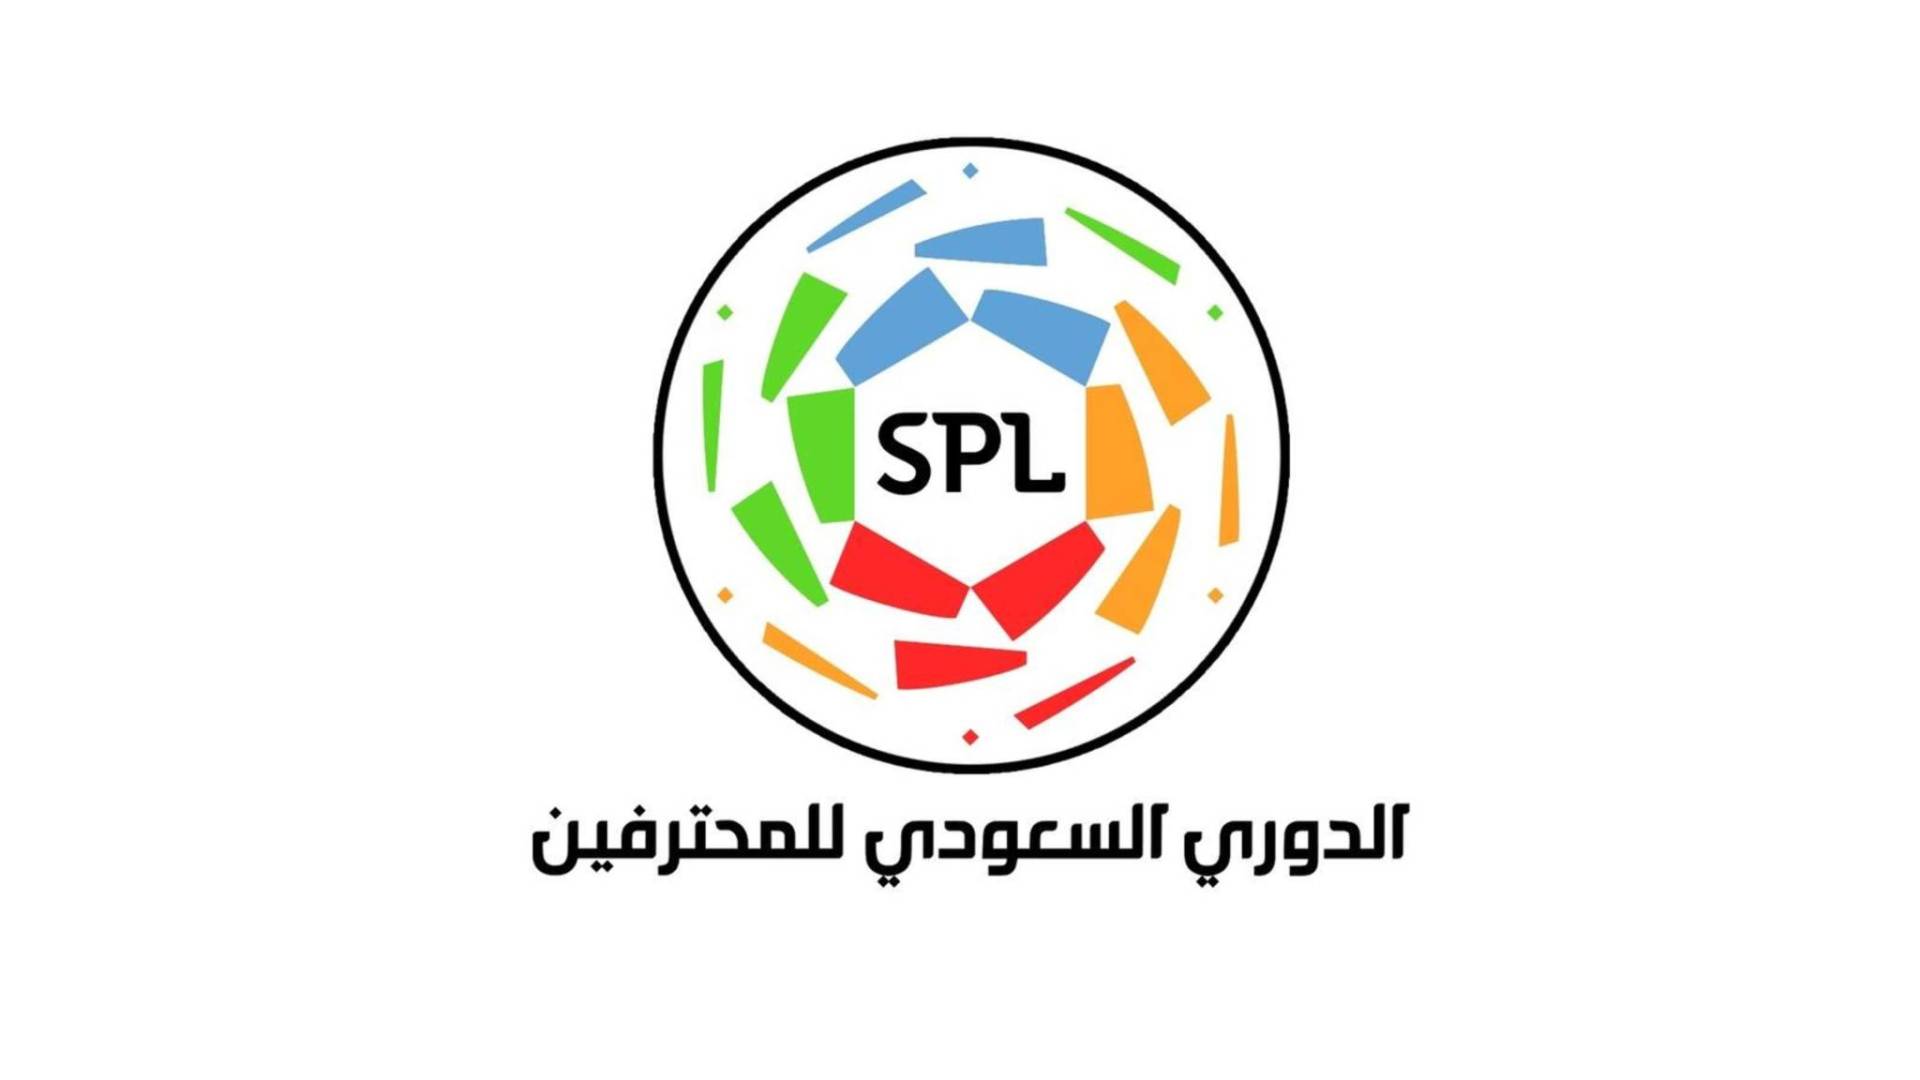 مباريات الجولة 14 من الدوري السعودي ومواعيدها بالتفصيل